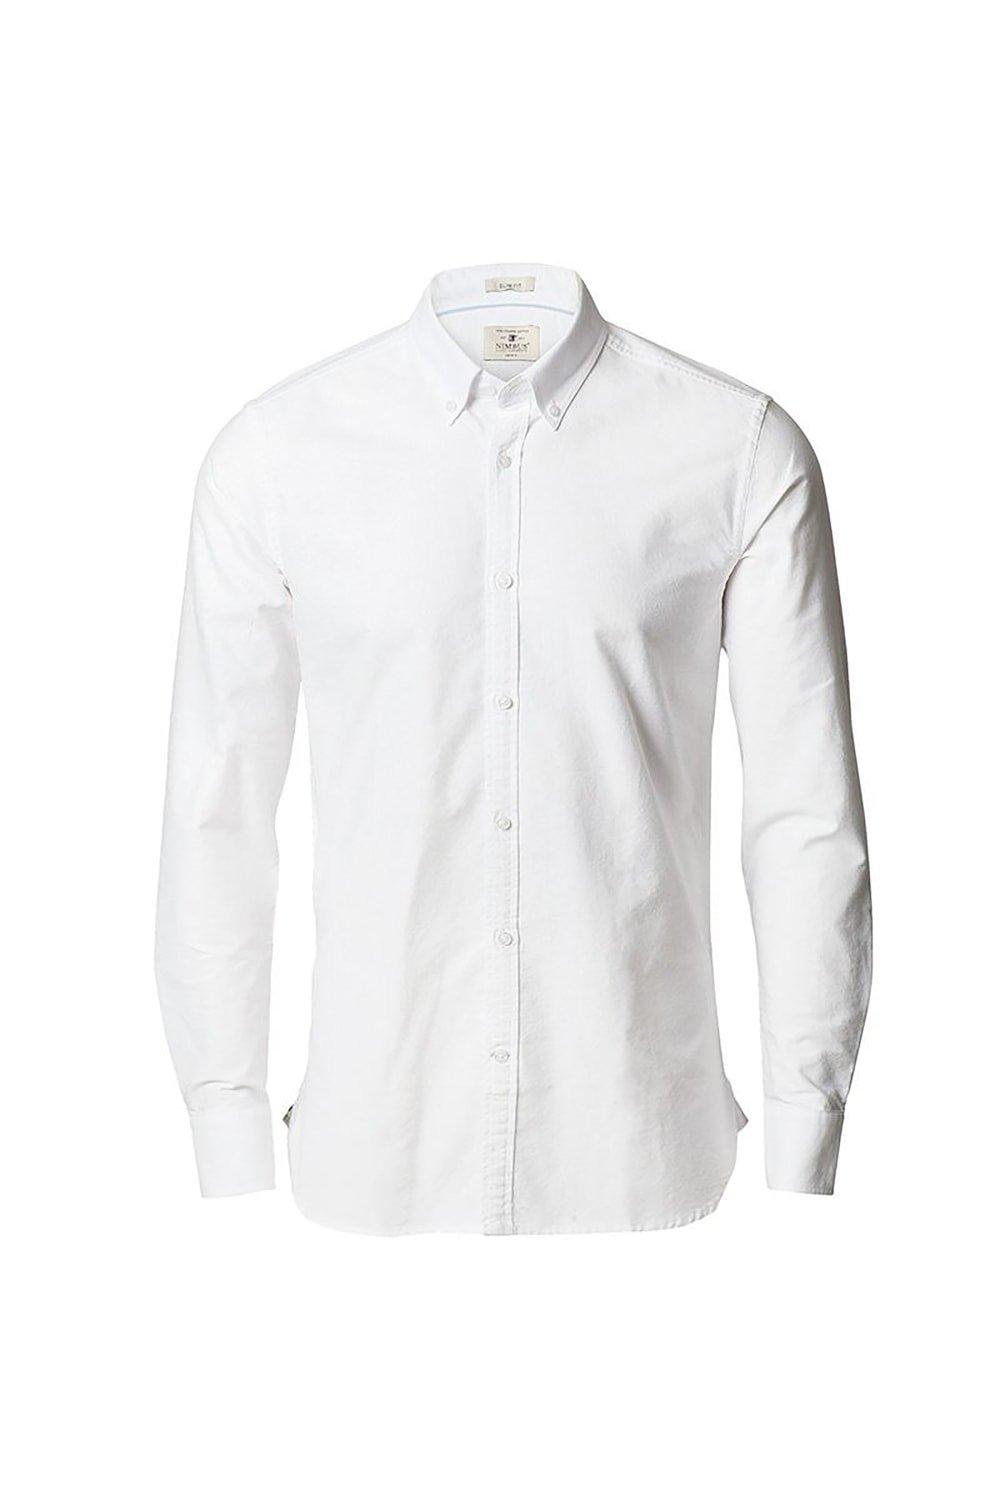 Оксфордская рубашка узкого кроя с длинными рукавами Rochester Nimbus, белый бриджи luhta светлые 44 46 размер